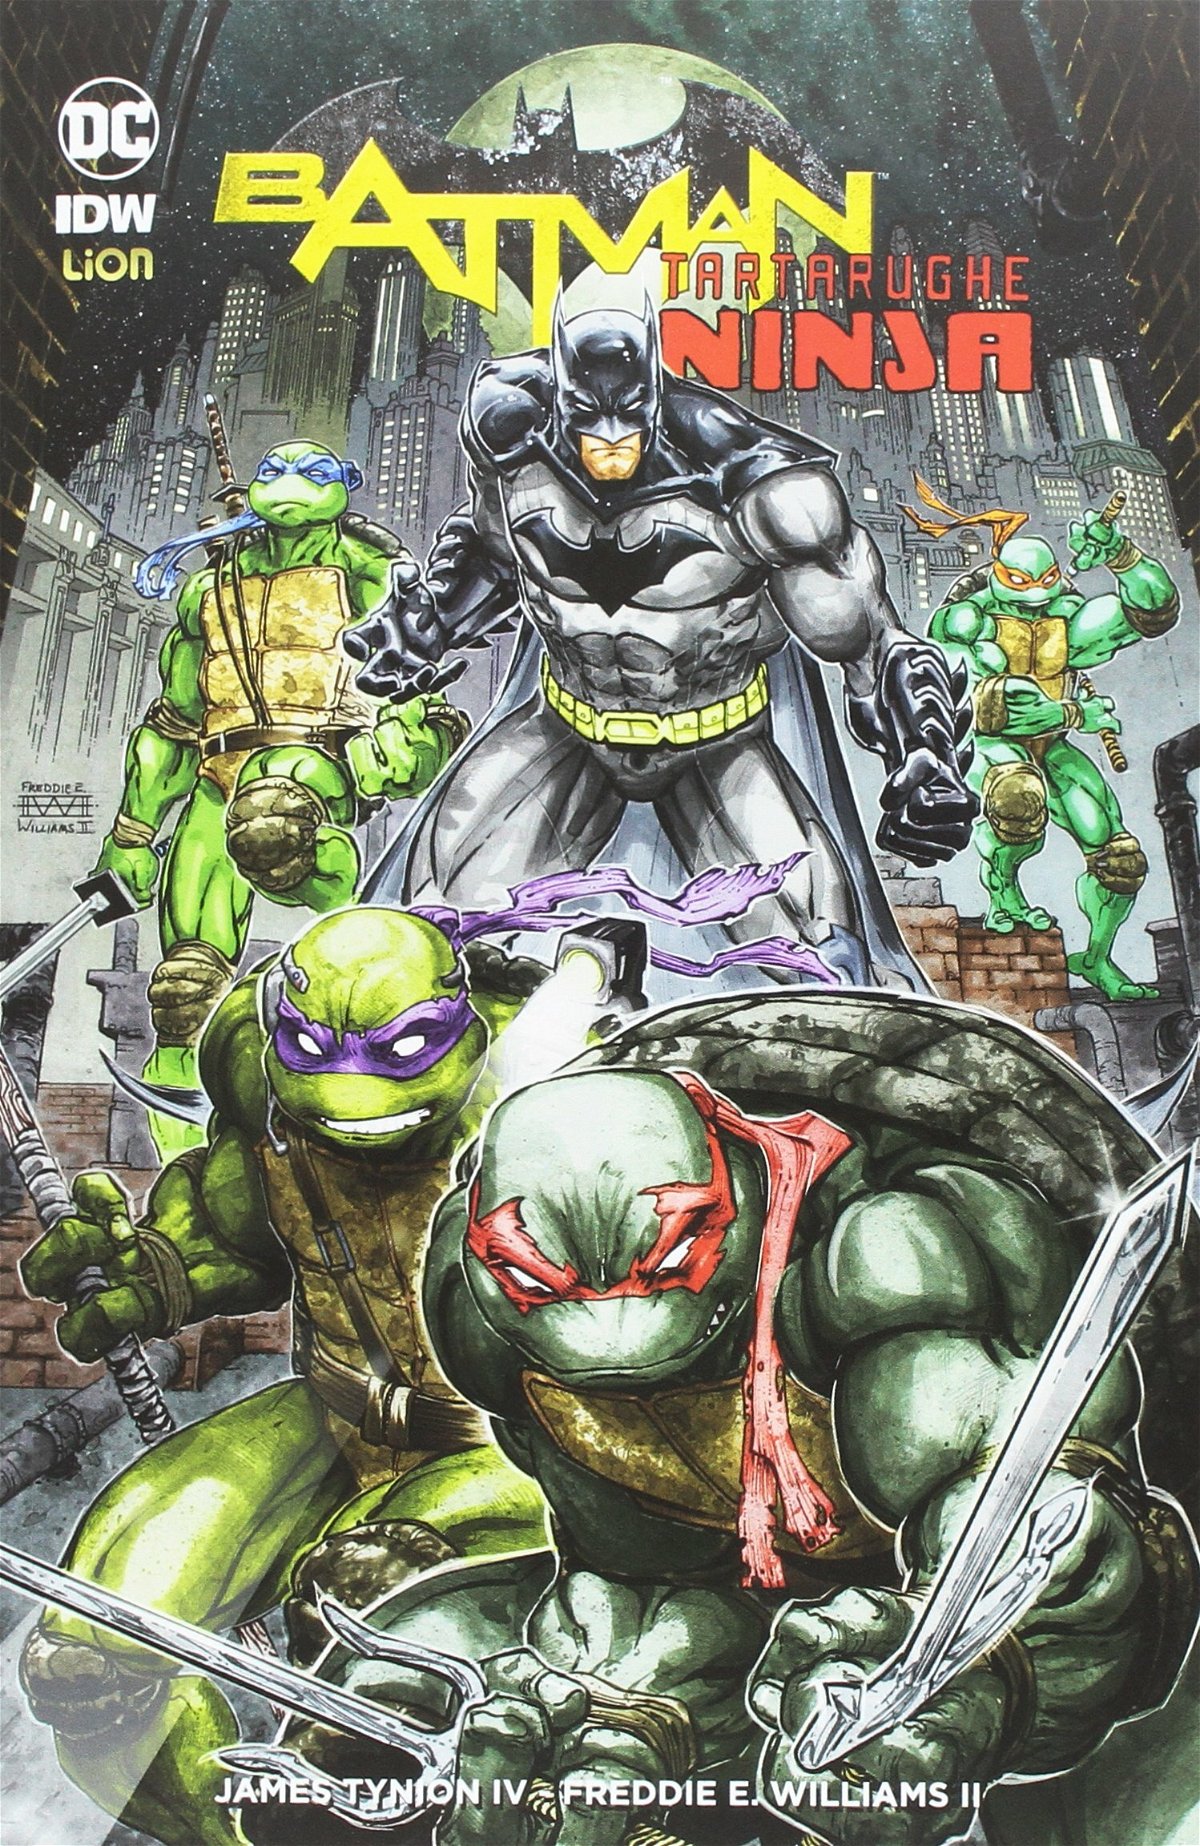 La portada del cómic de Batman/Tortugas Ninja